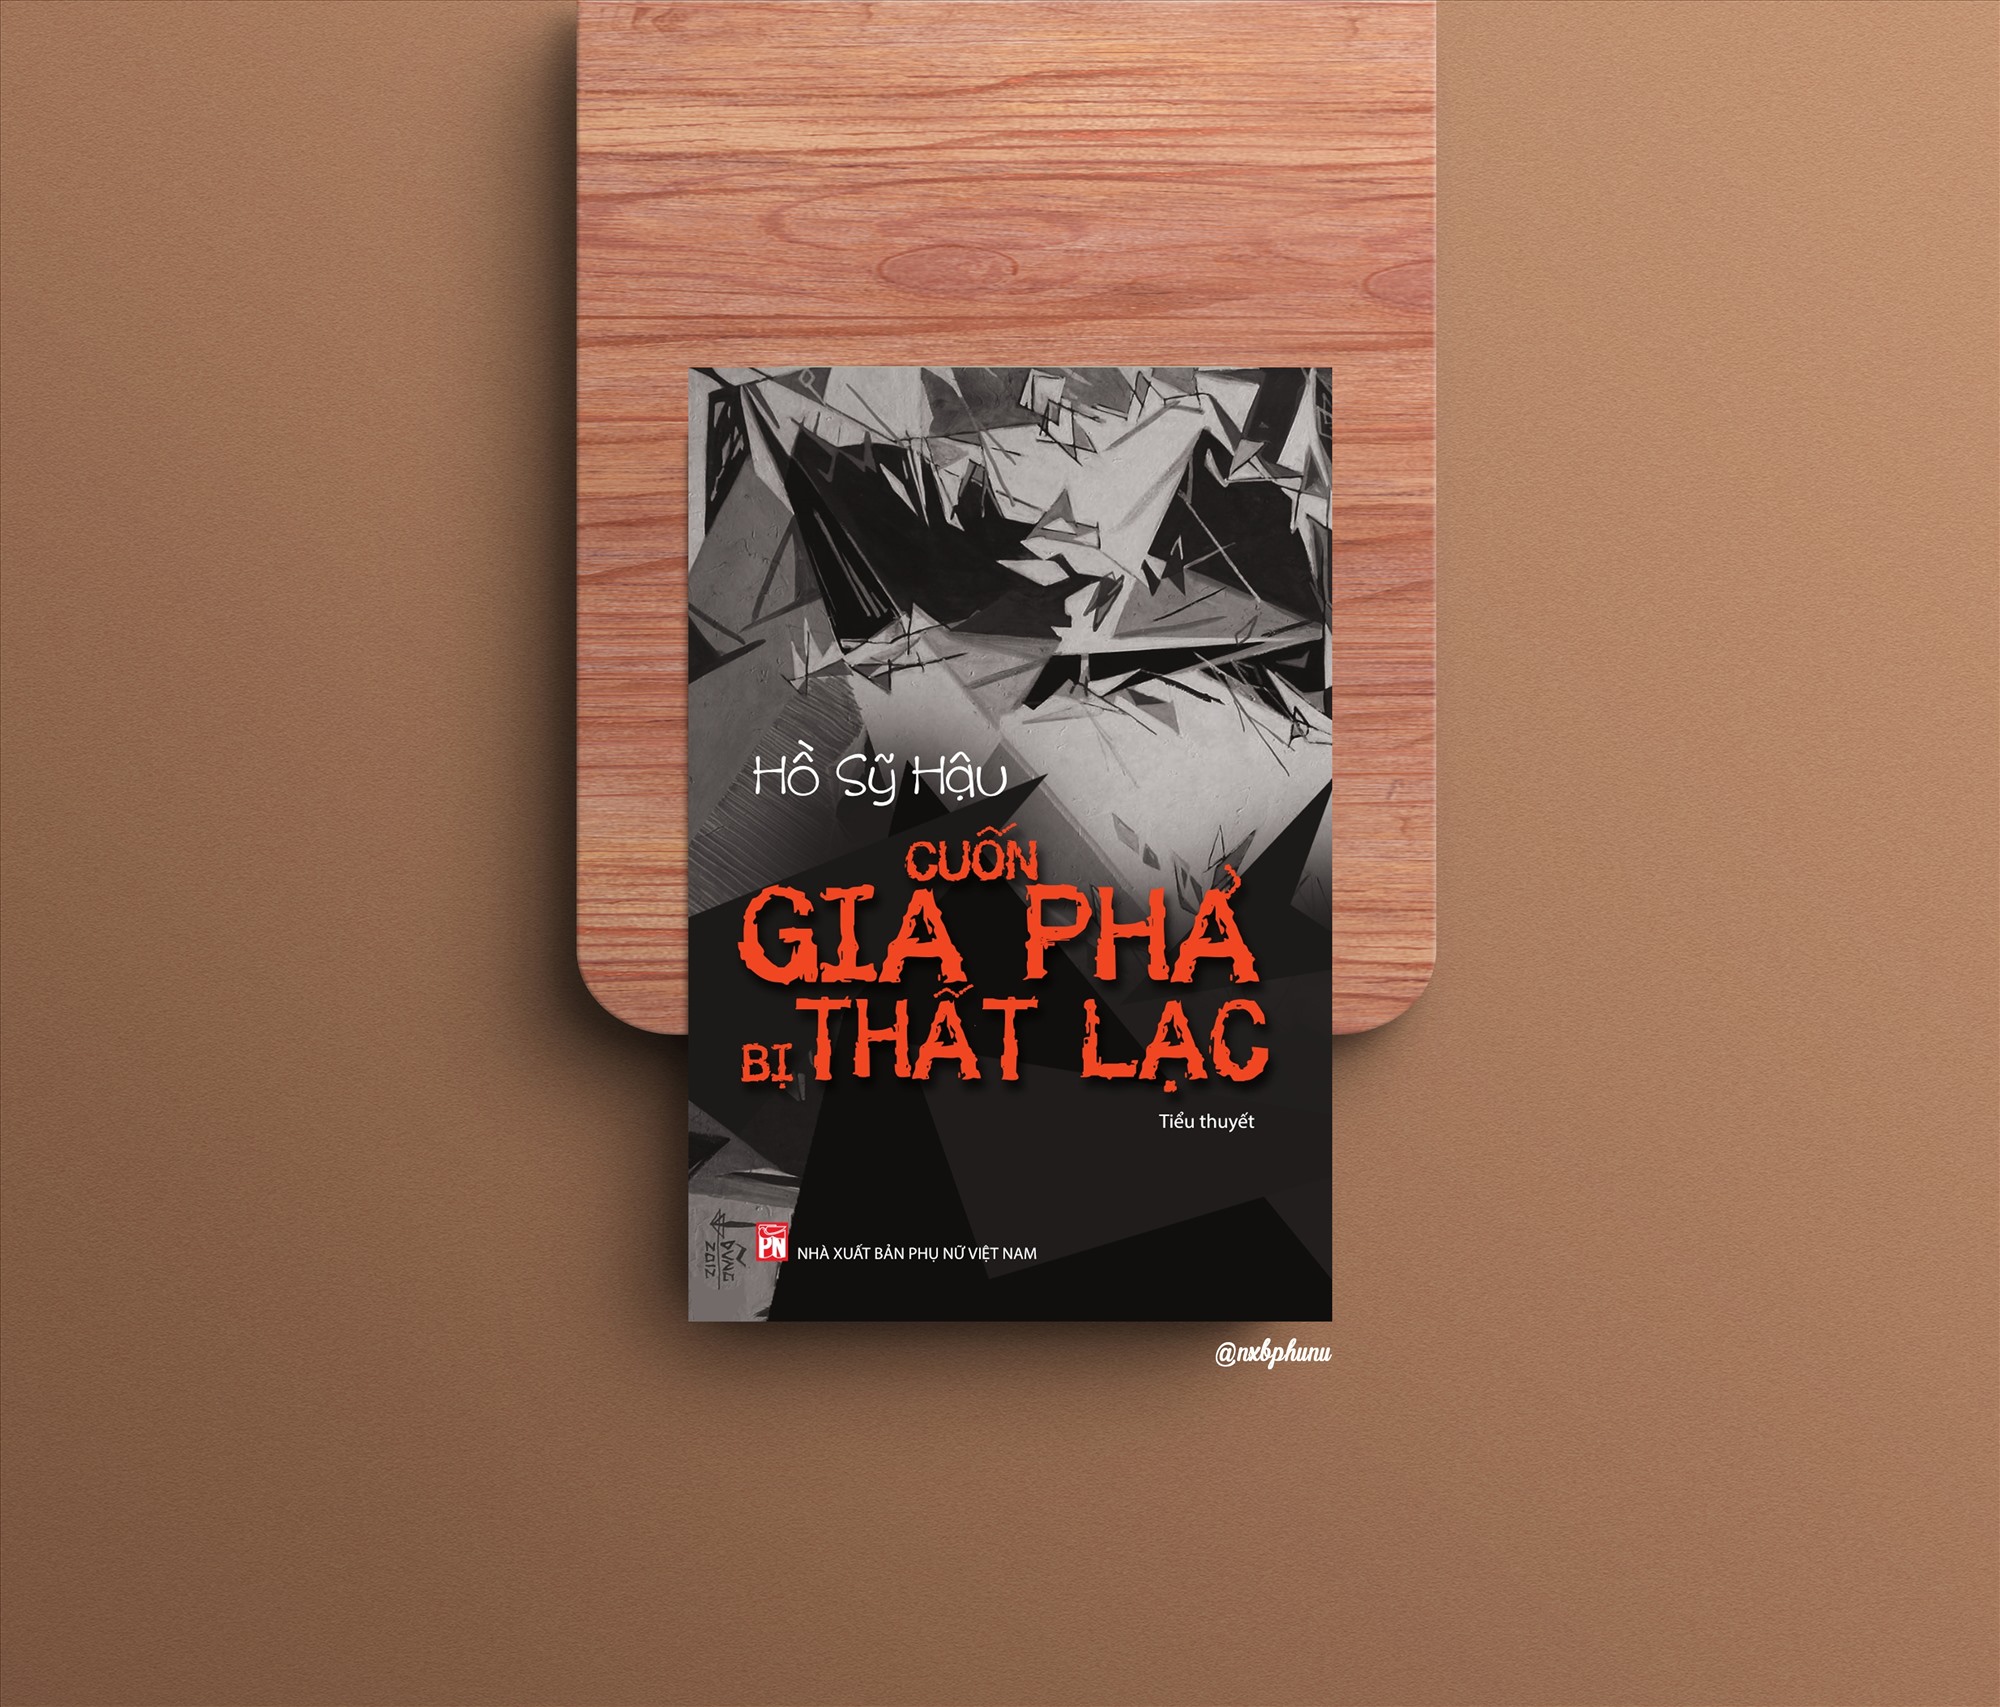 Tiểu thuyết “Cuốn gia phả bị thất lạc“. Ảnh: NXB Phụ Nữ Việt Nam cung cấp